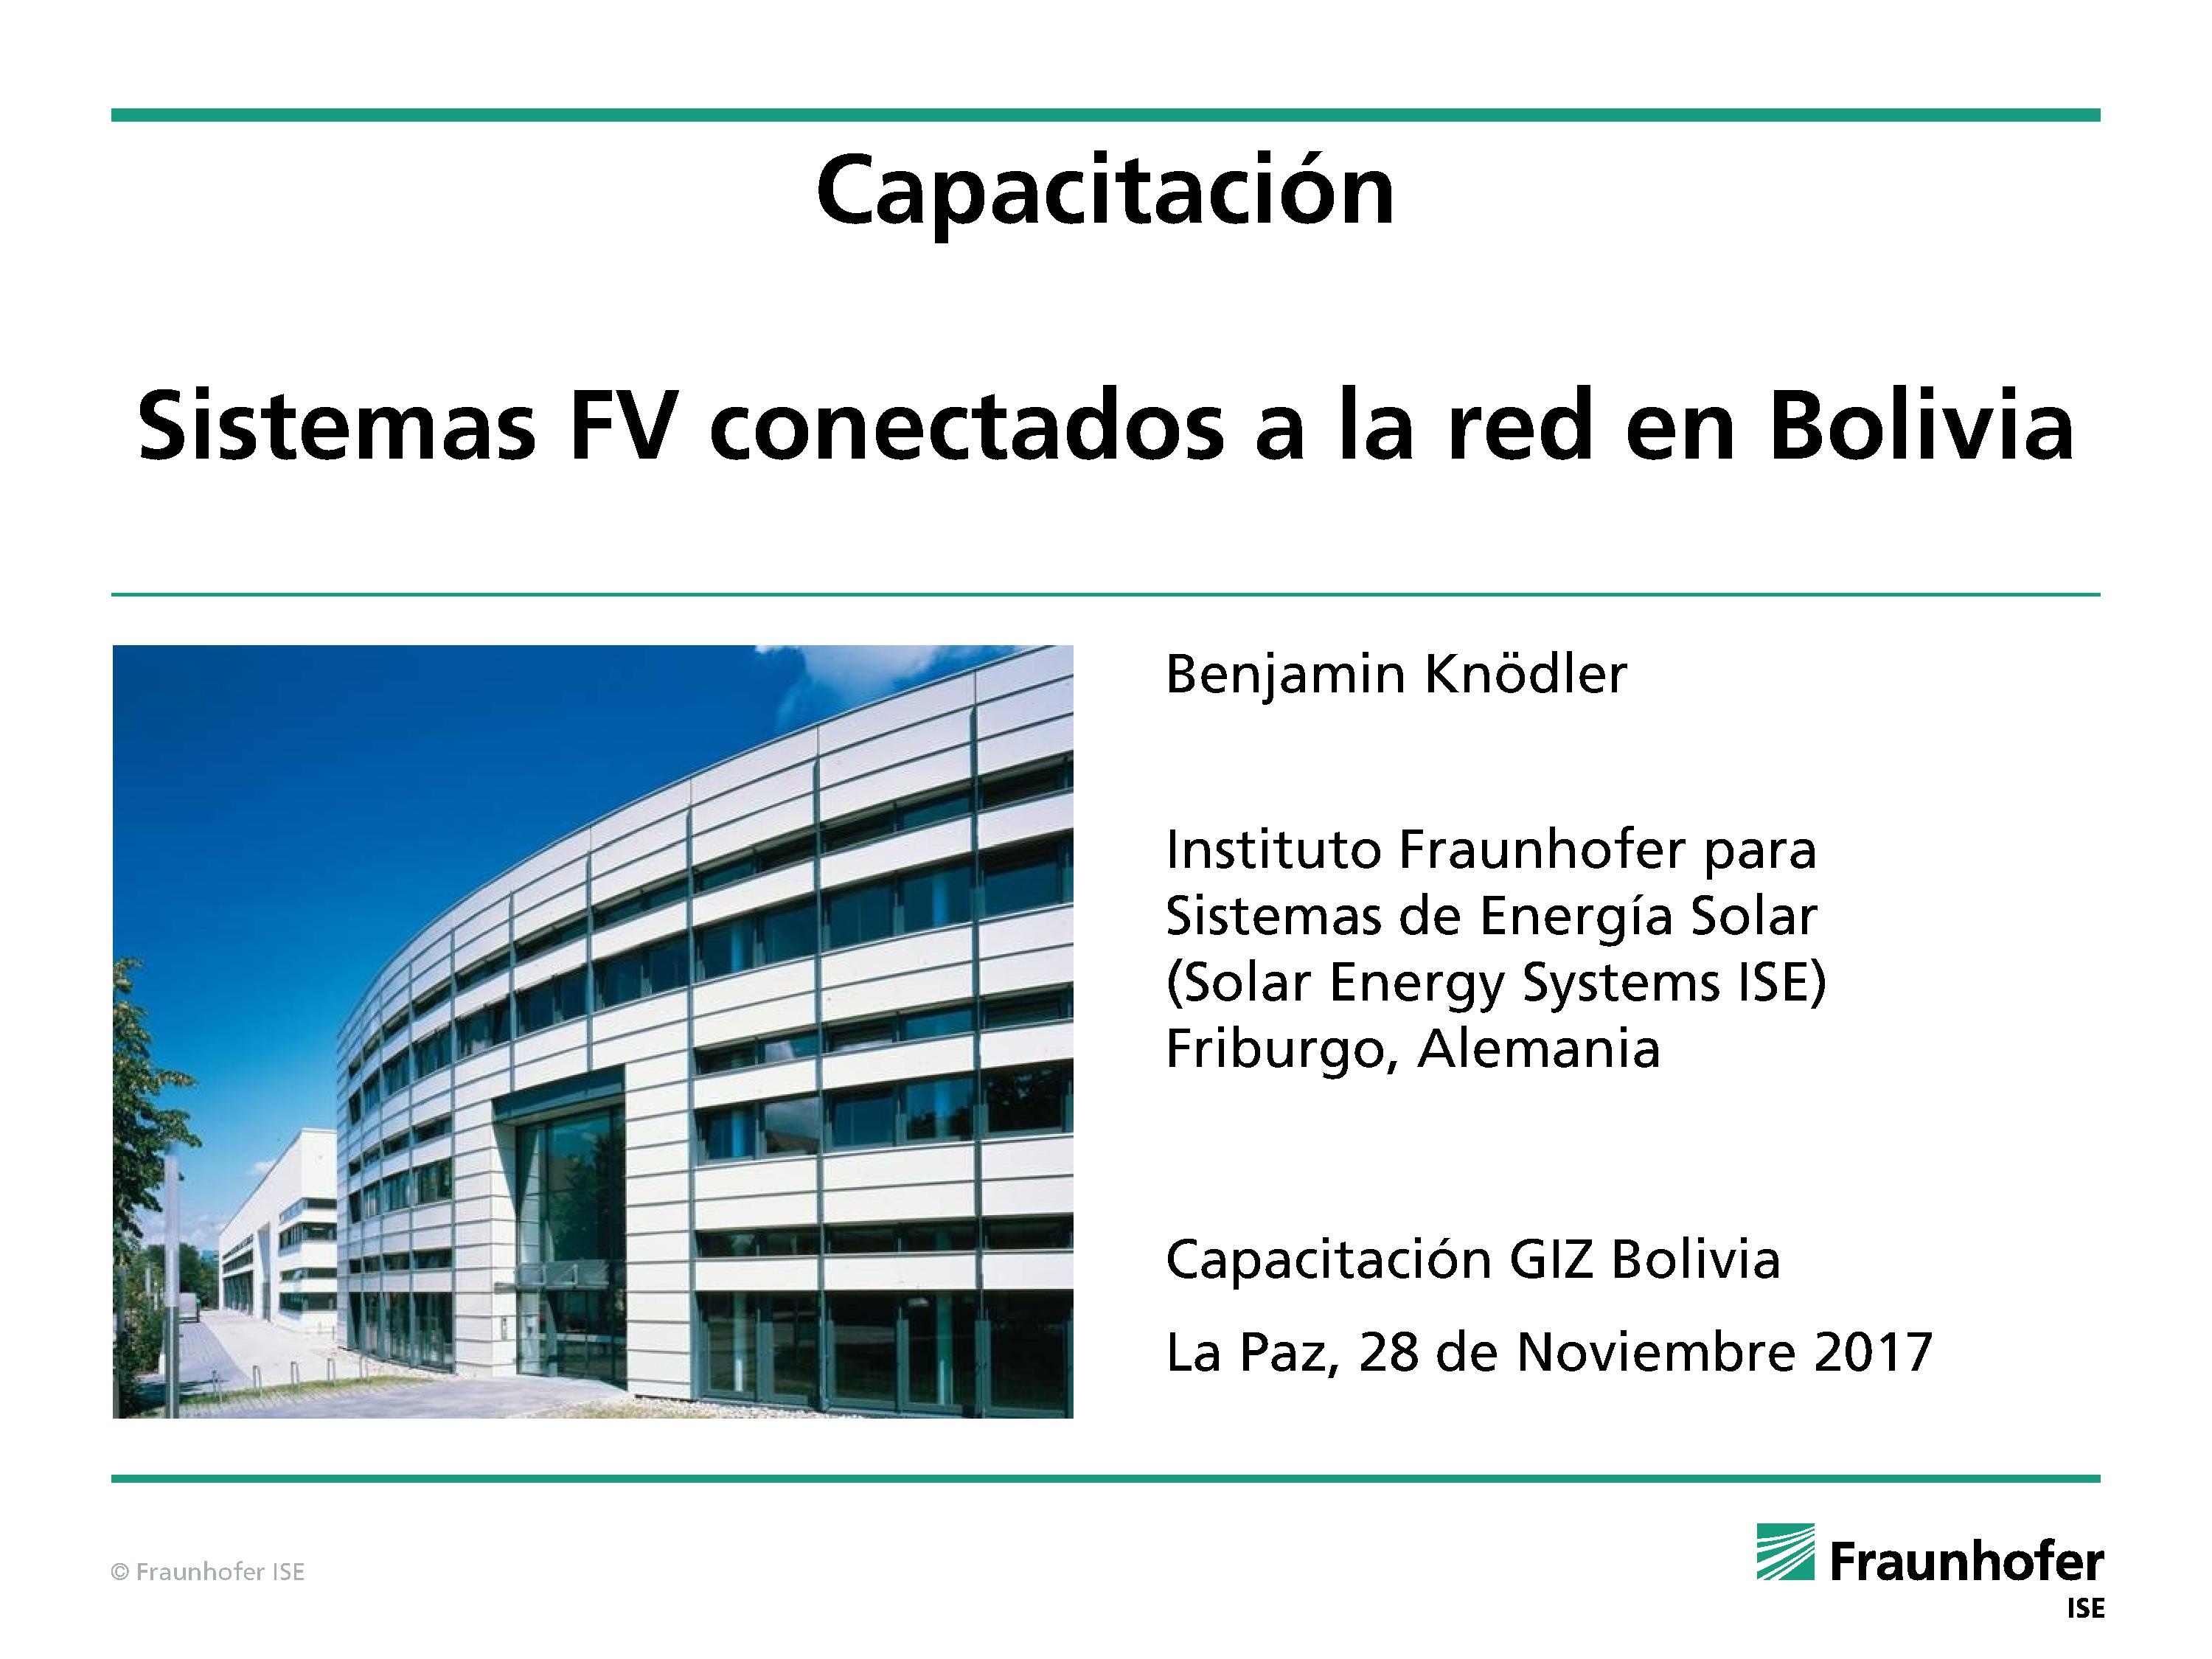 • Sistemas FV conectados a la red en Bolivia (Benjamin Knödler)